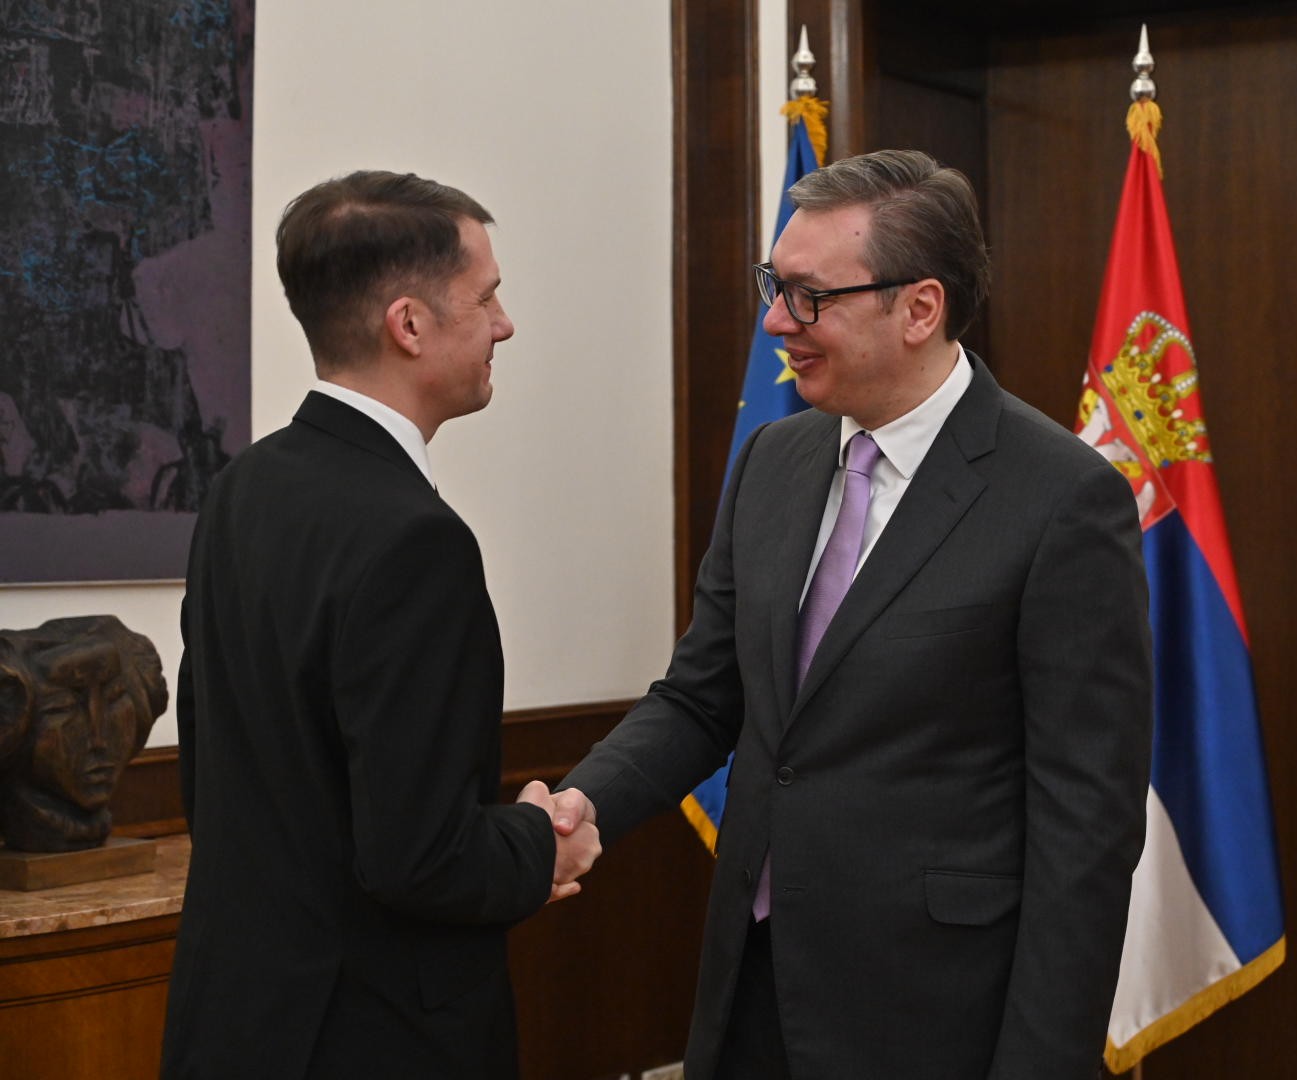 Ungarischer Verband der Wojwodina stellt serbischem Staatsoberhaupt seine Agenda vor